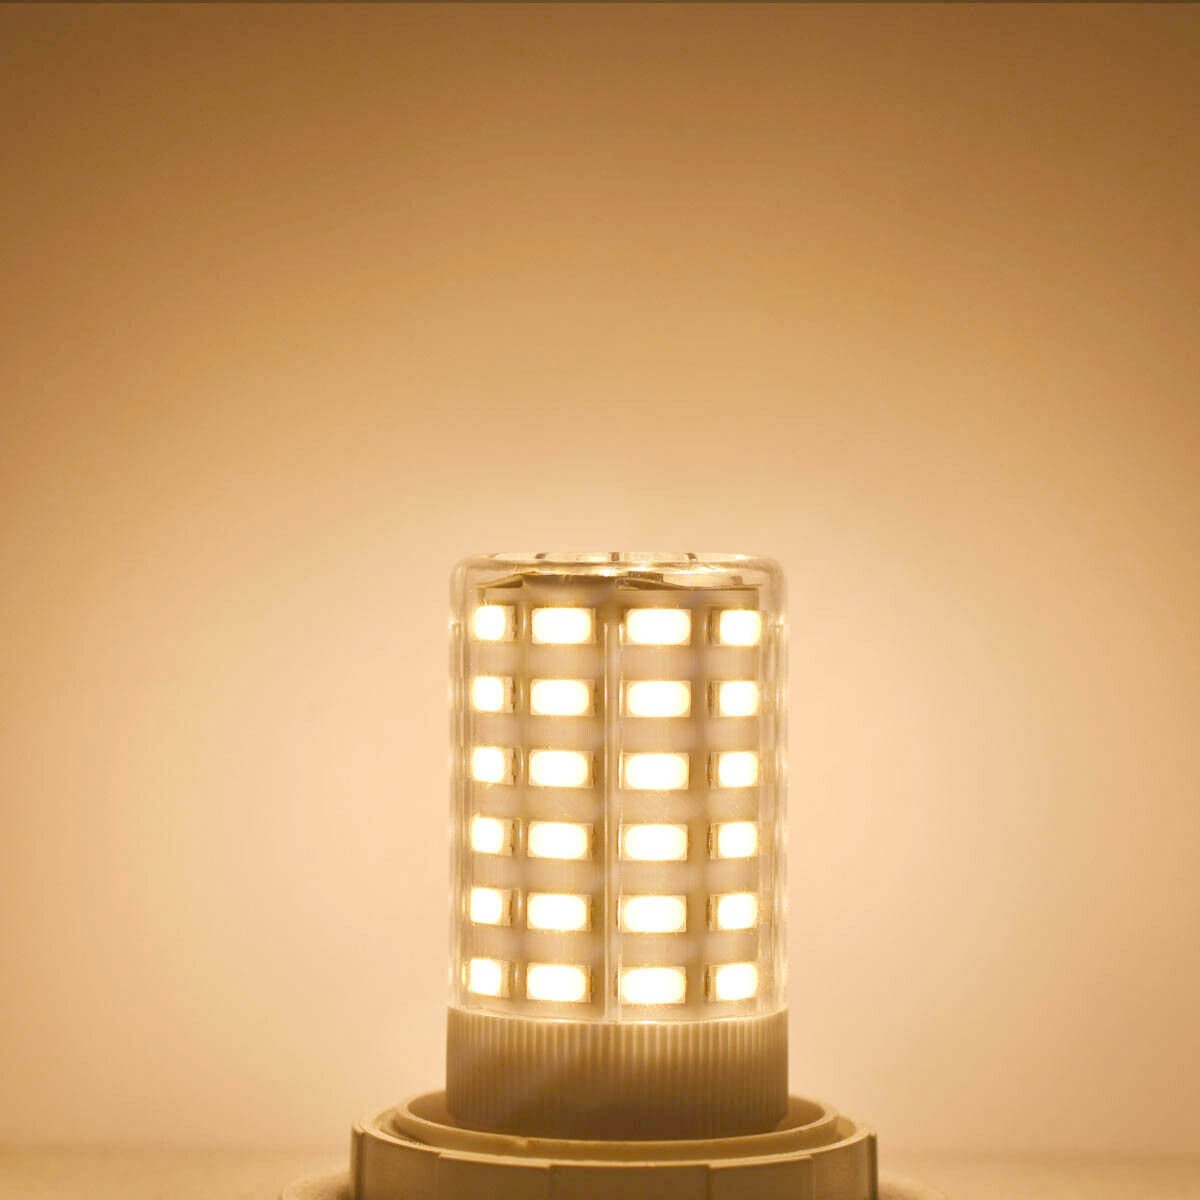 2pcs E27/E26 LED Light Globe Bulb 66-5730 Corn Lamp Fit RV/Boat/Solar AC/DC 12V